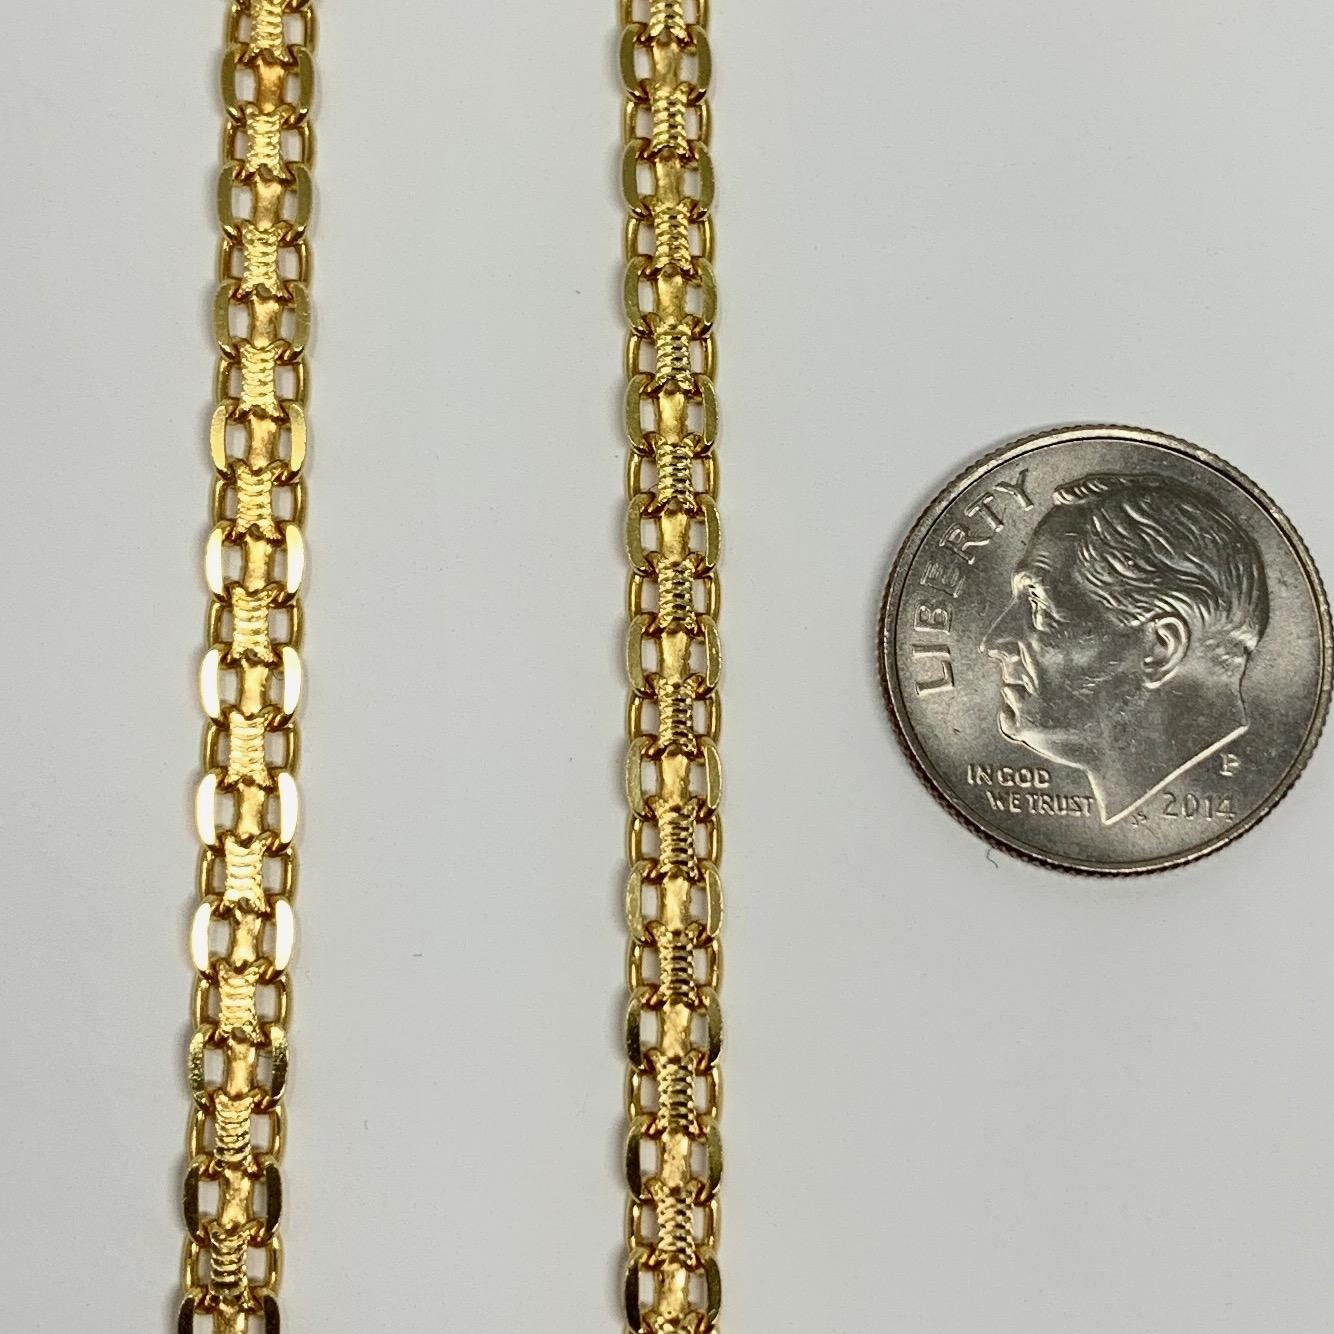 bismark chain necklace